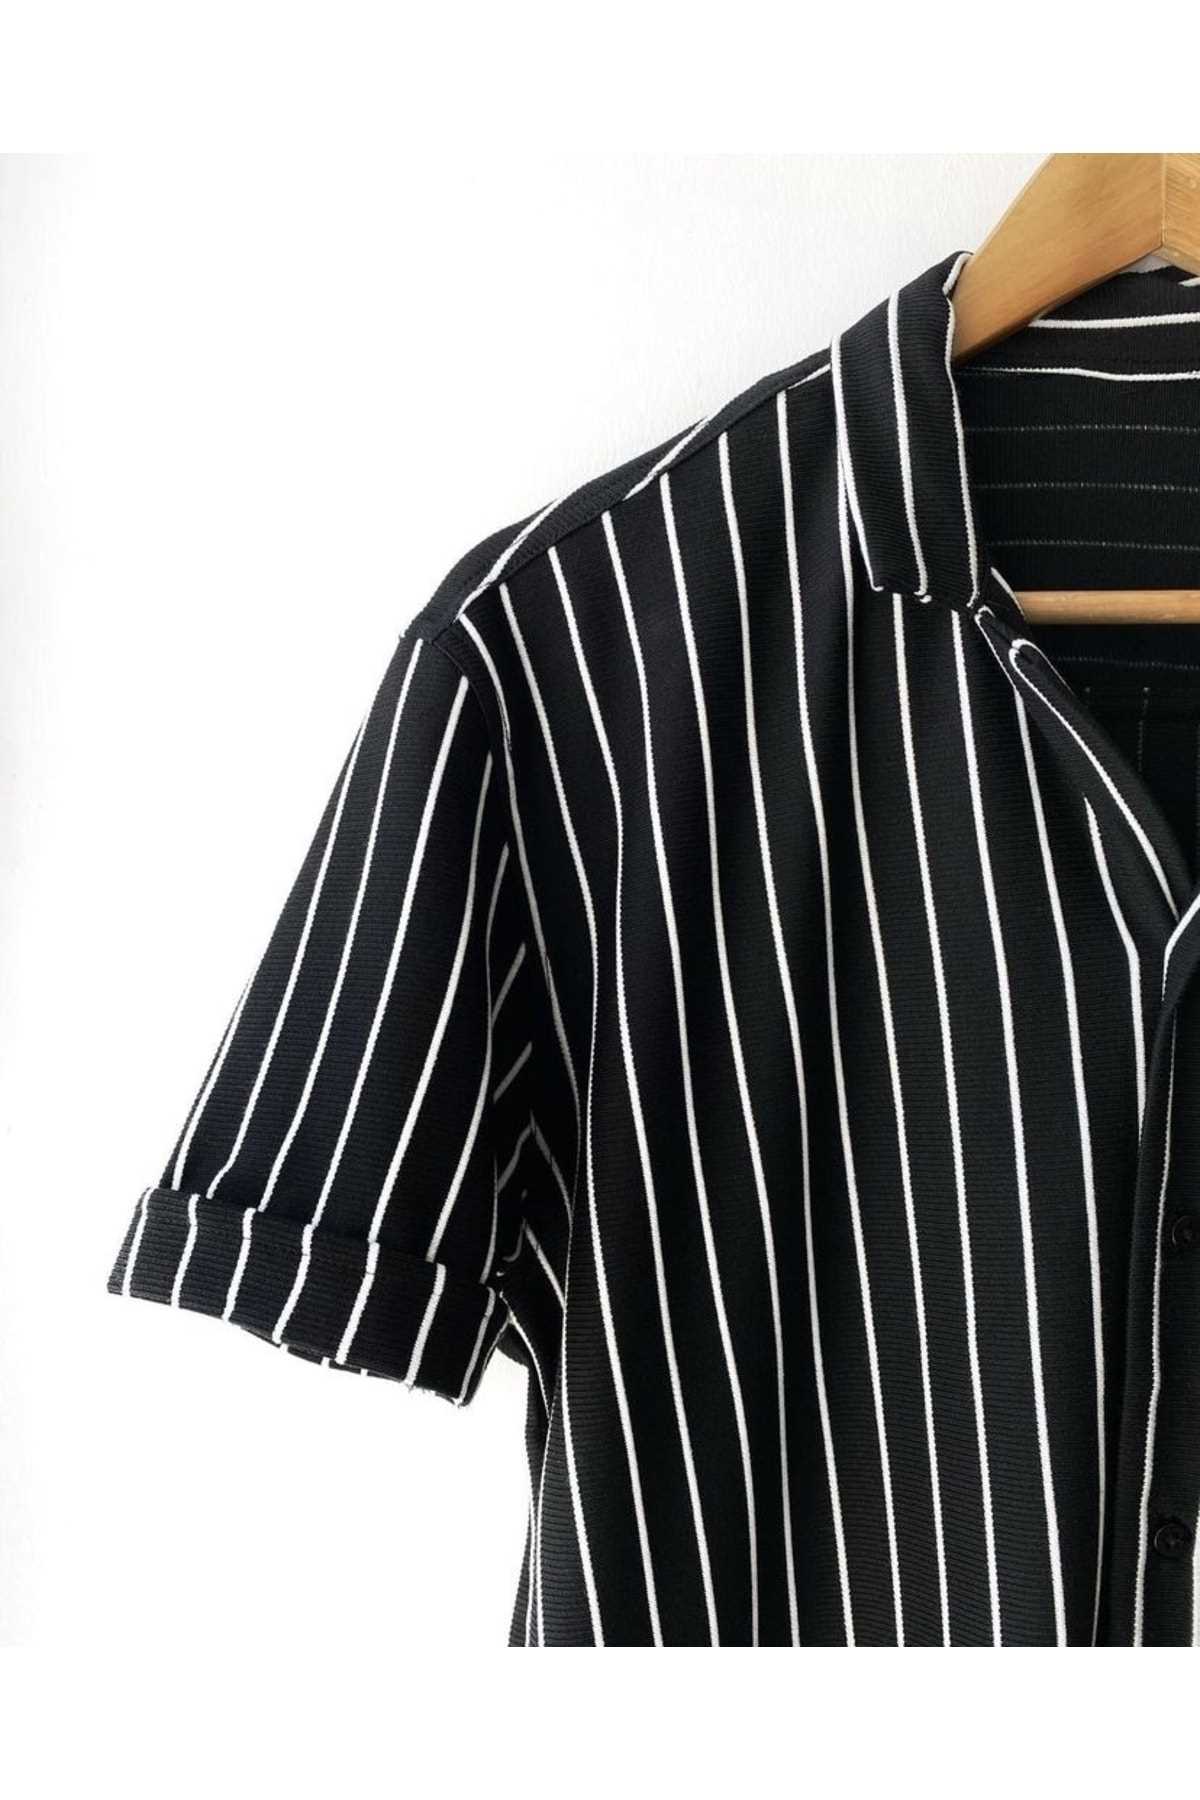 خرید اینترنتی پیراهن مردانه برند Rubras رنگ مشکی کد ty270109046